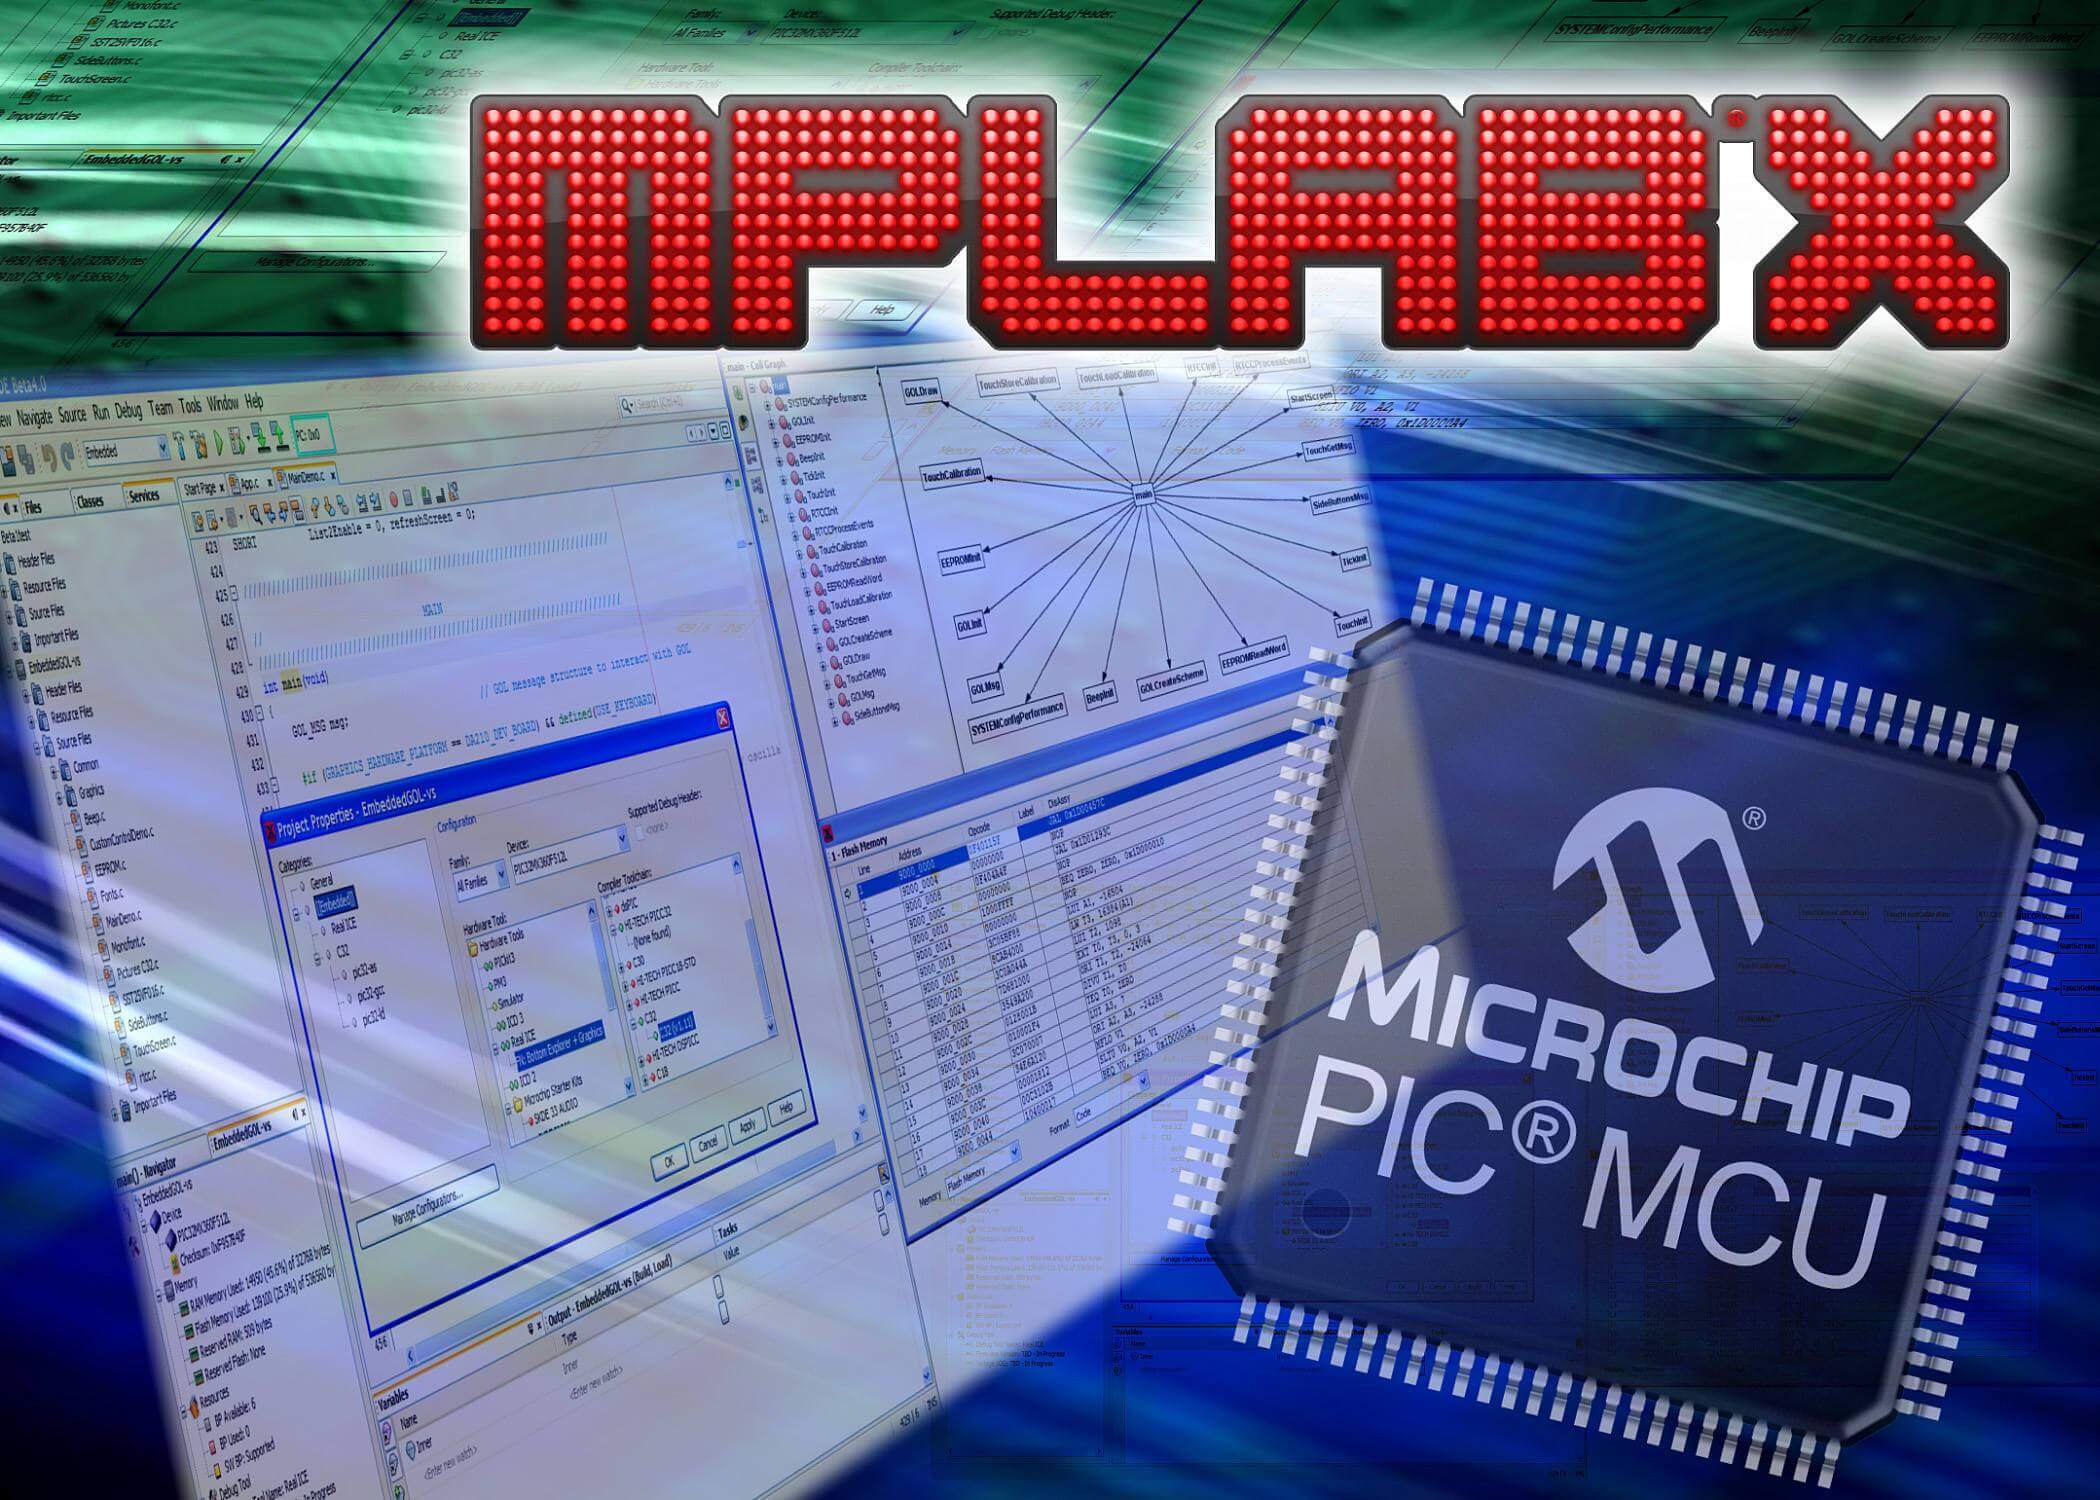 MPLAB_X_IDE_microchip_pic